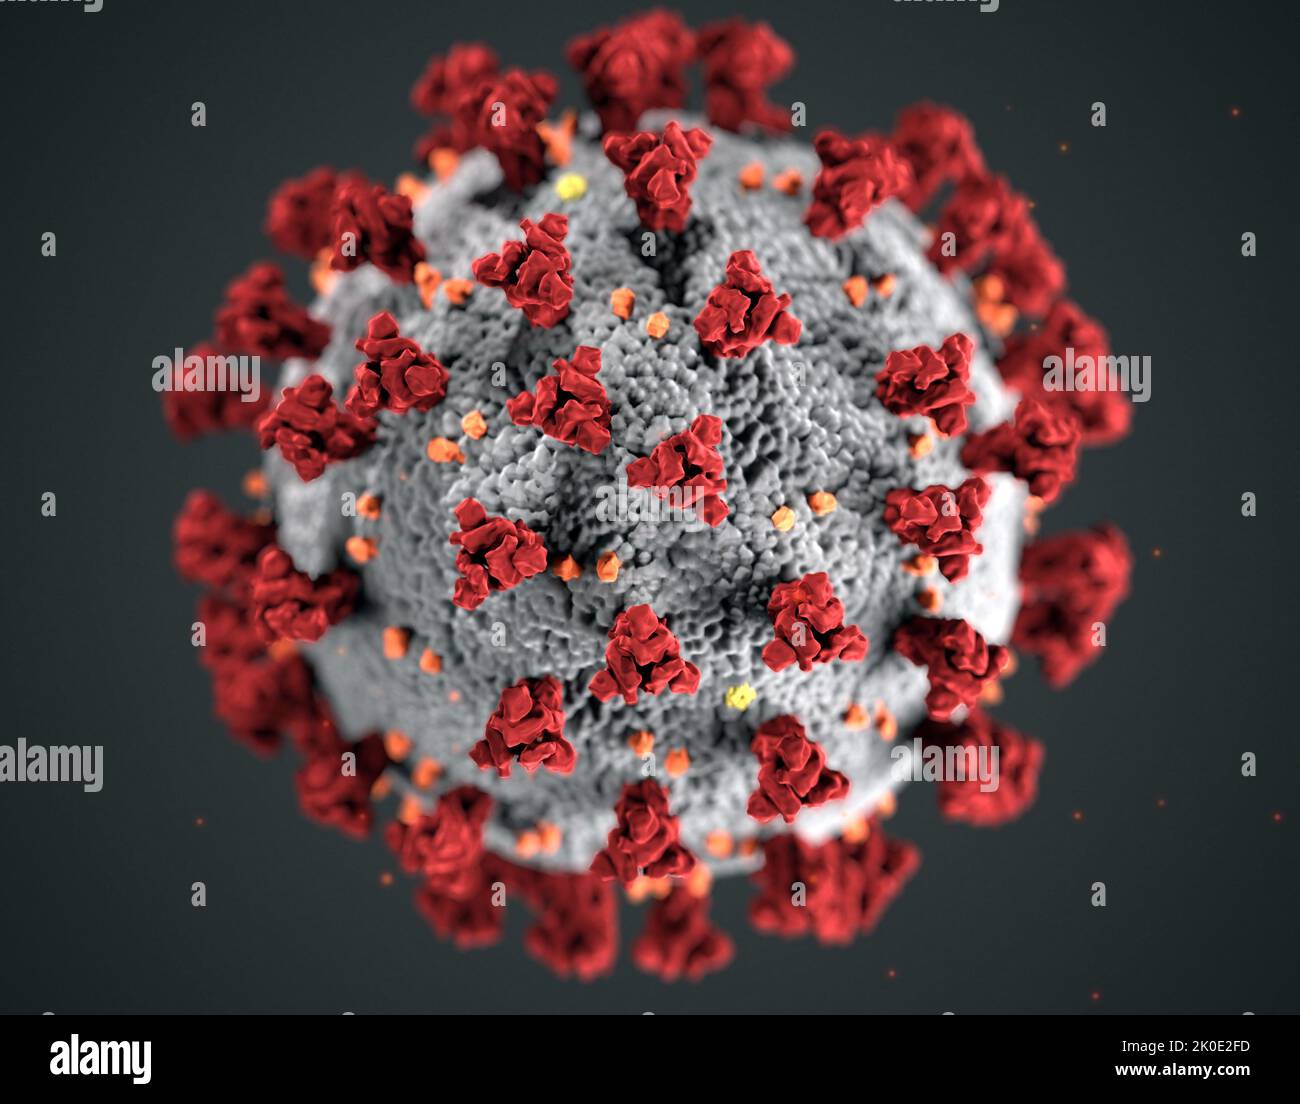 Illustration, erstellt in den Centers for Disease Control and Prevention (CDC), der ultrastrukturellen Morphologie, die von Coronaviren gezeigt wurde. Ein neuartiges Coronavirus, genannt Severe Acute Respiratory Syndrome Coronavirus 2 (SARS-CoV-2), wurde als Ursache für einen Ausbruch von Atemwegserkrankungen identifiziert, der erstmals 2019 in Wuhan, China, entdeckt wurde. Die durch dieses Virus verursachte Krankheit wurde Coronavirus Disease 2019 (COVID-19) genannt. Stockfoto